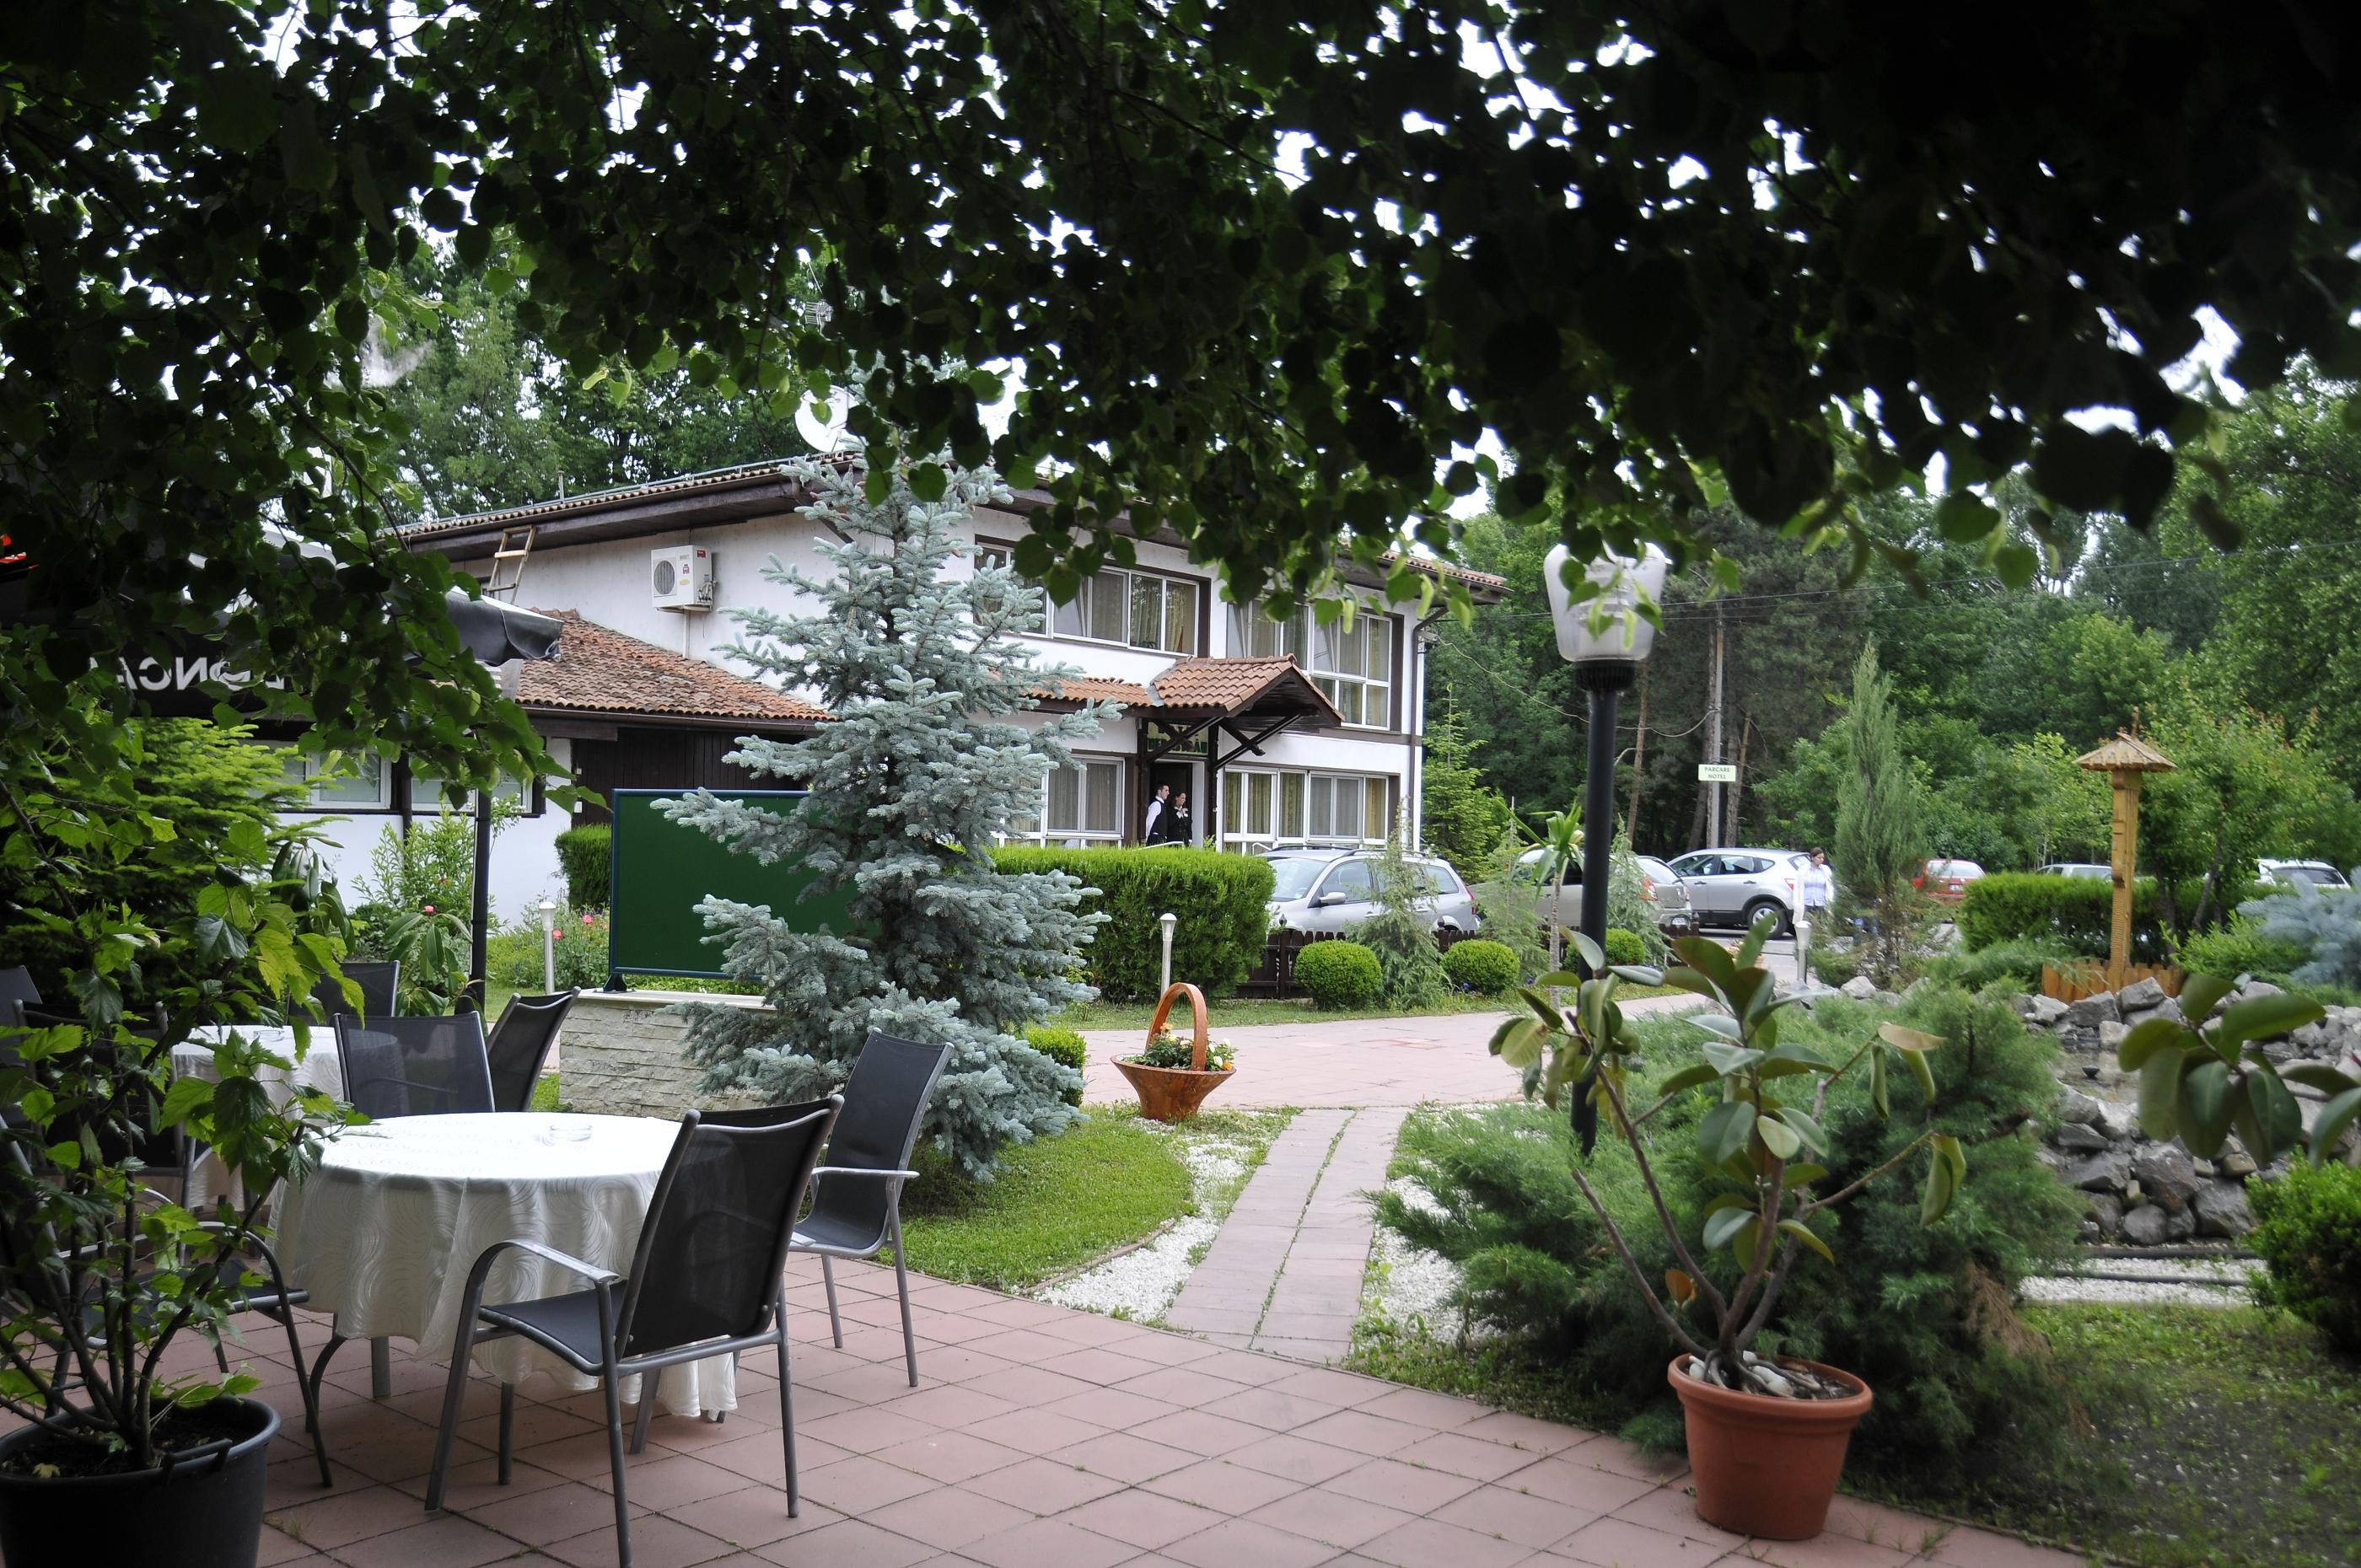 Hotel Herastrau Bucharest Exterior photo